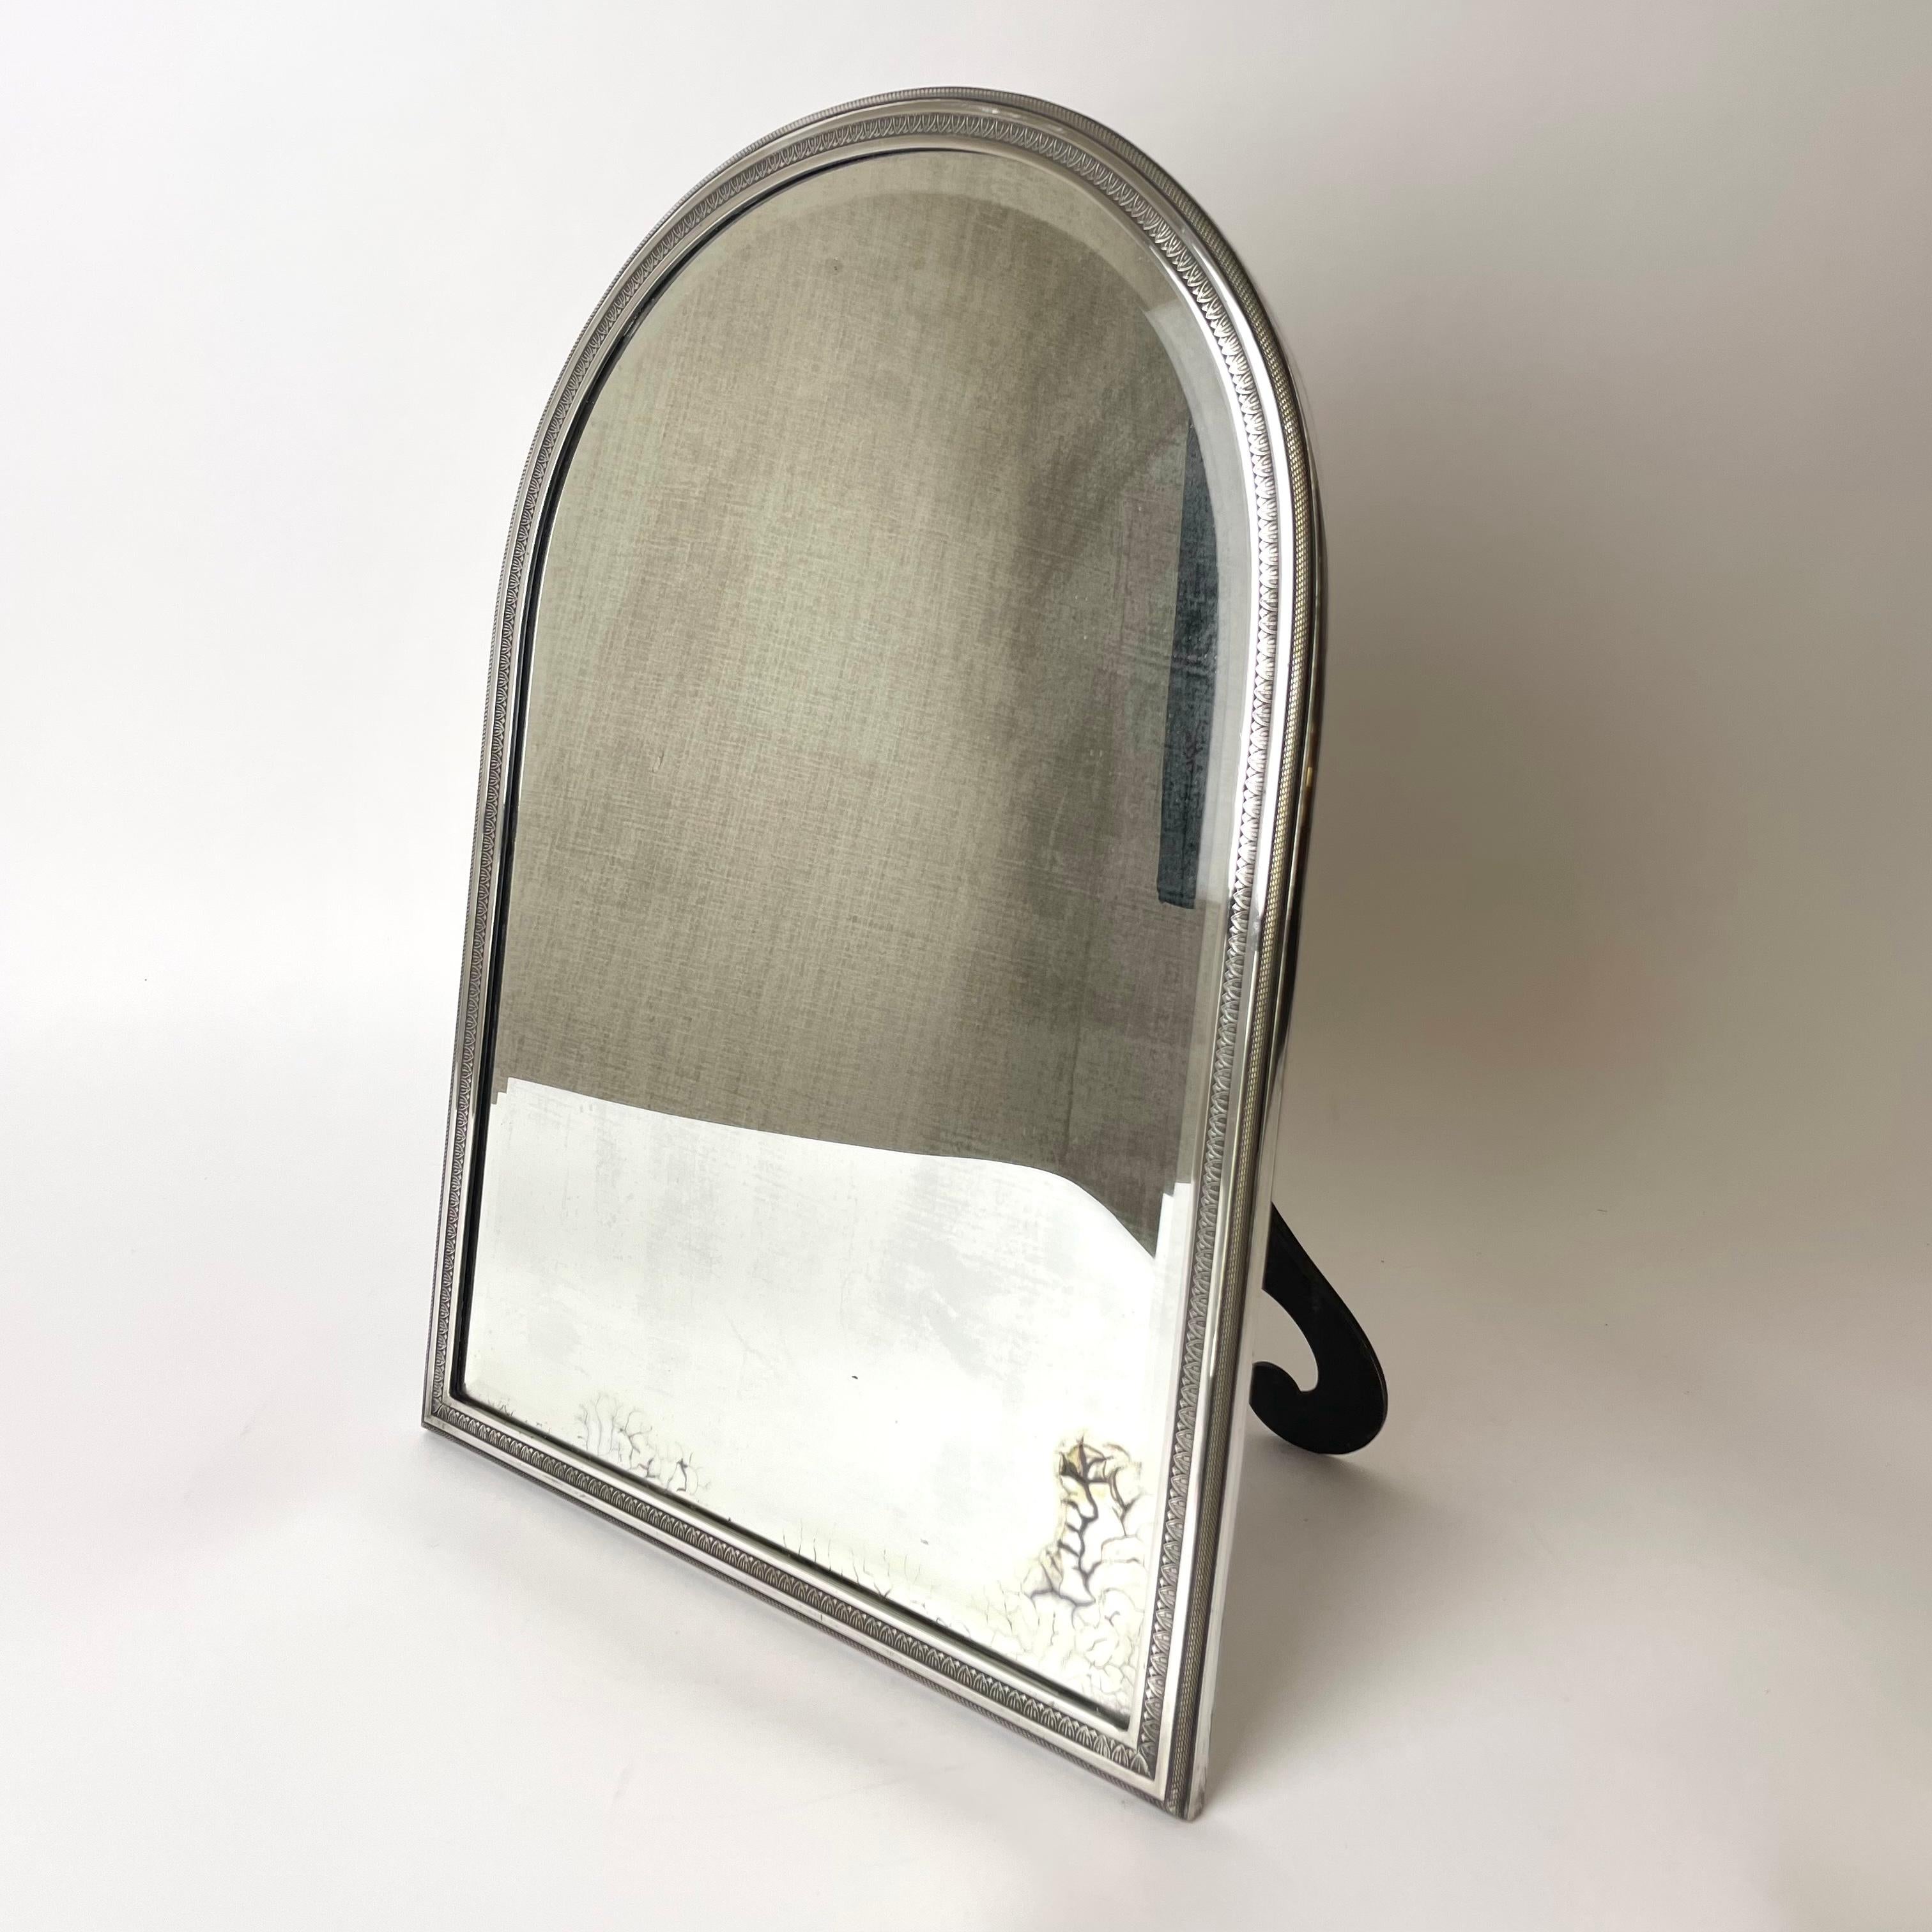 Elegant miroir de table/mur en argent plaqué. Le miroir peut être utilisé à la fois comme miroir de table et pour un mur ( voir photos ). Magnifiquement décorée dans le style Empire et fabriquée en France à la fin du 19e siècle. Le verre du miroir